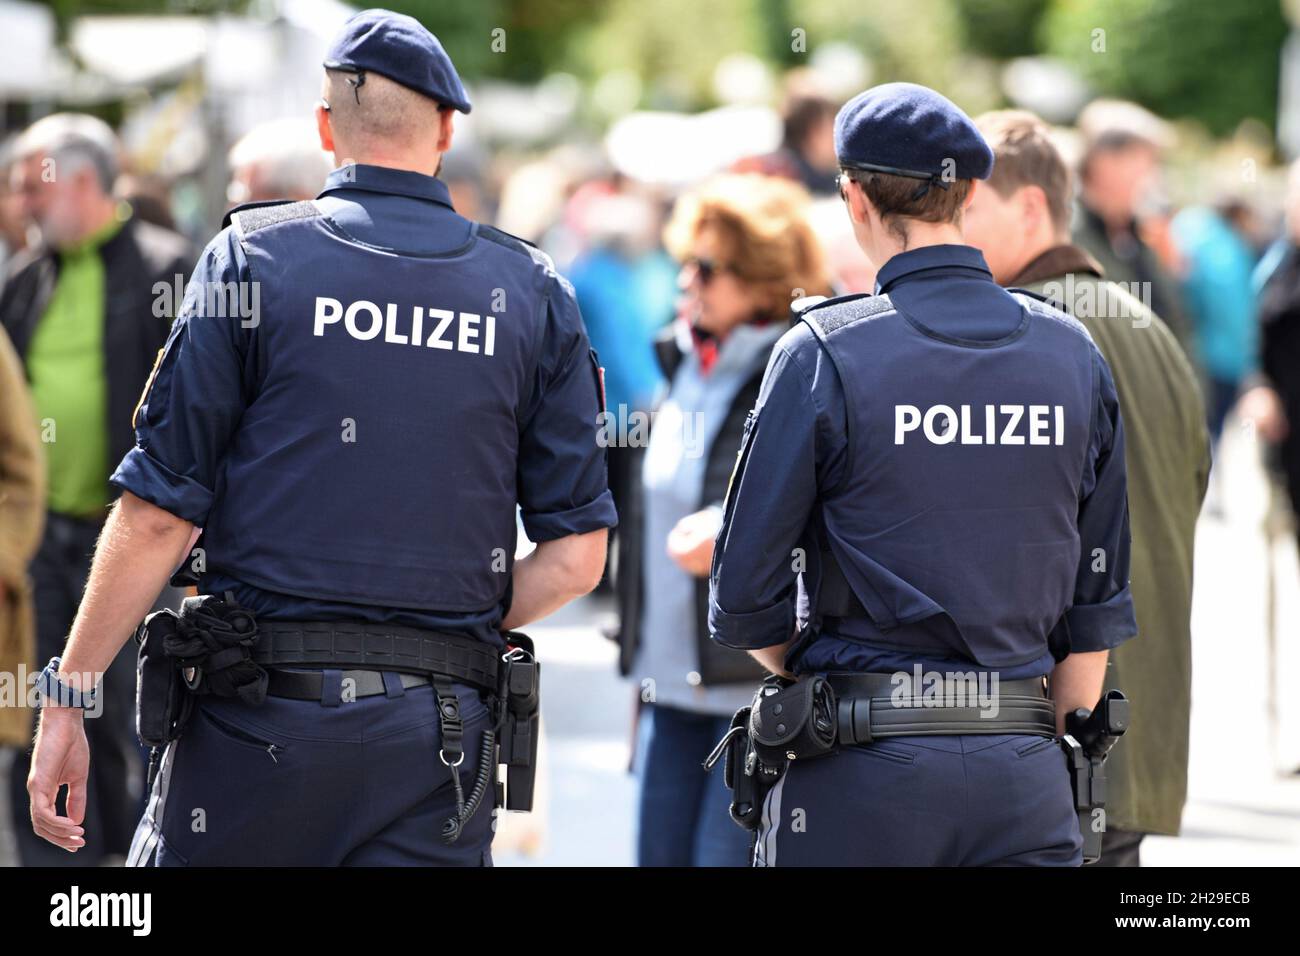 Polizisten bei einer Veranstaltung in Gmunden, Salzkammergut, Oberösterreich, Europa - Police officers at an event in Gmunden, Salzkammergut, Upper Au Stock Photo